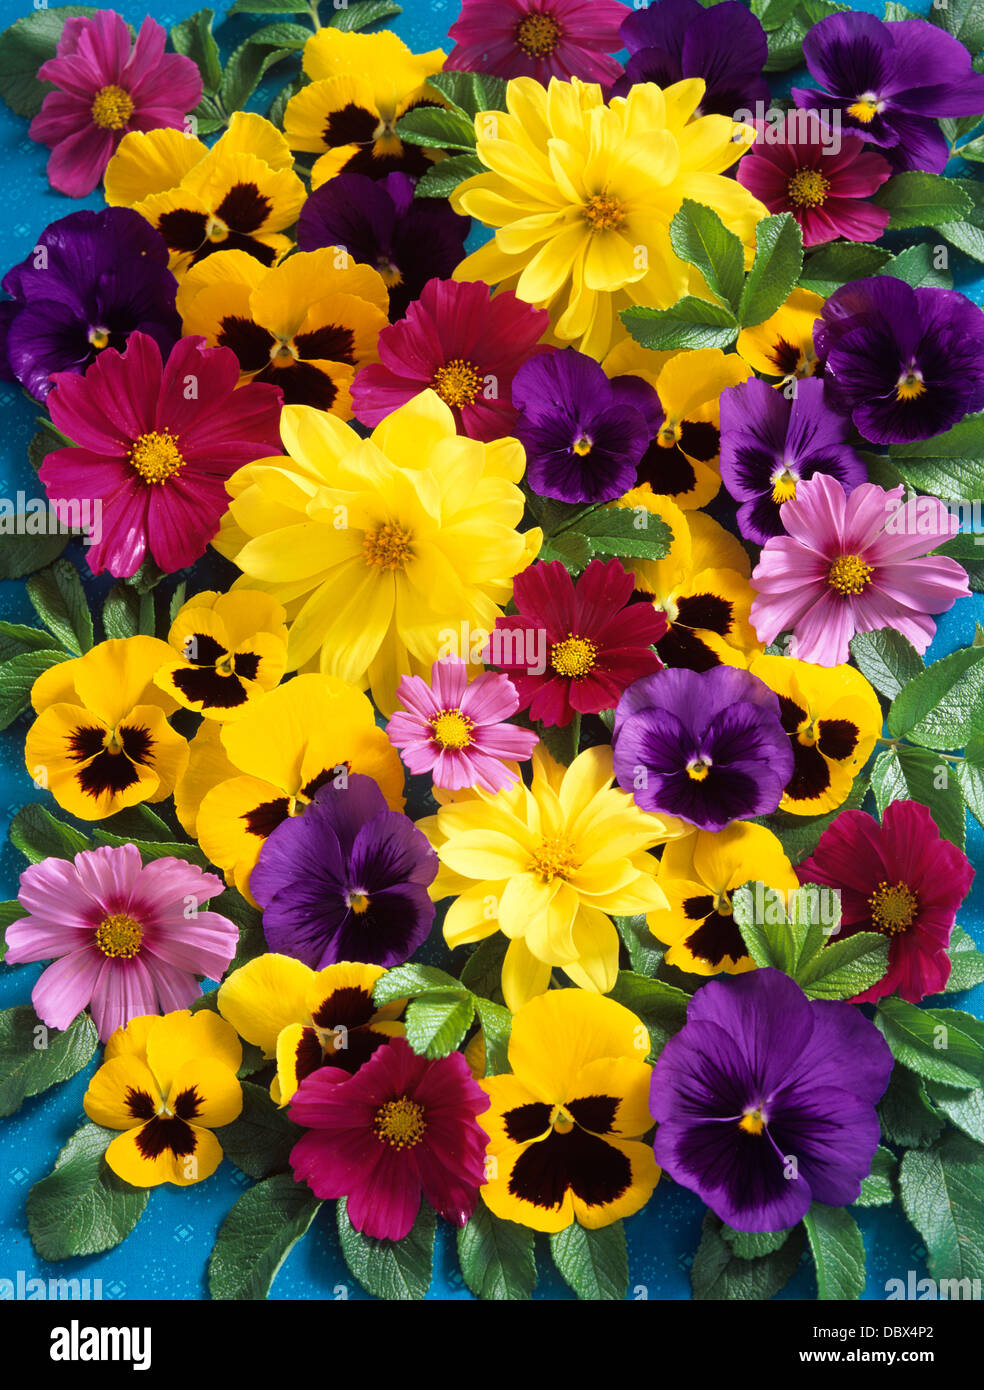 COLLAGE di fiori viola e giallo CORESPOSI PANSIES e margherite Foto Stock